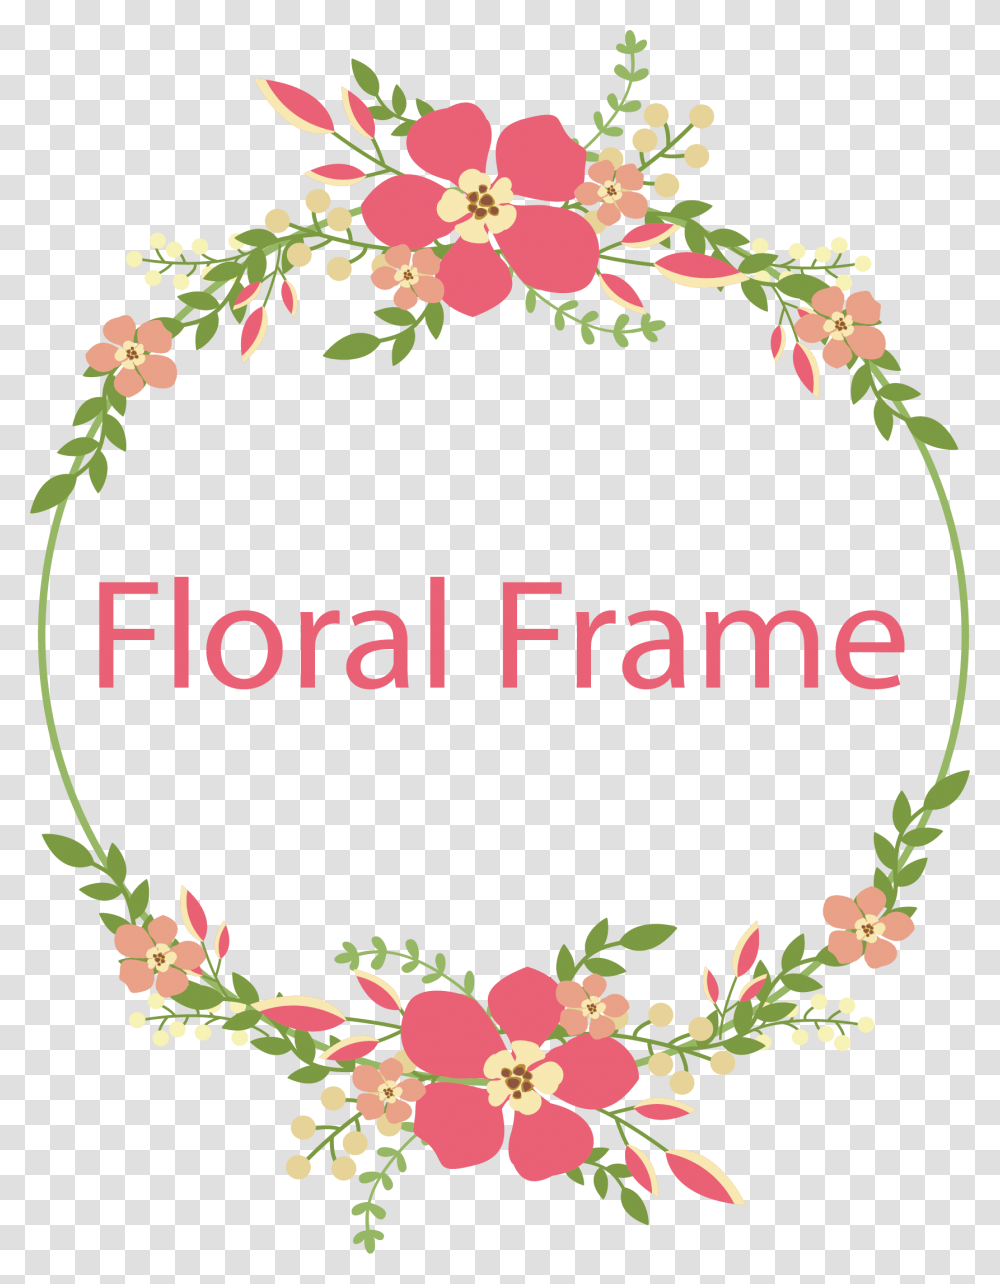 Floral Frame Cross Stitch Flower Border Free, Floral Design, Pattern Transparent Png